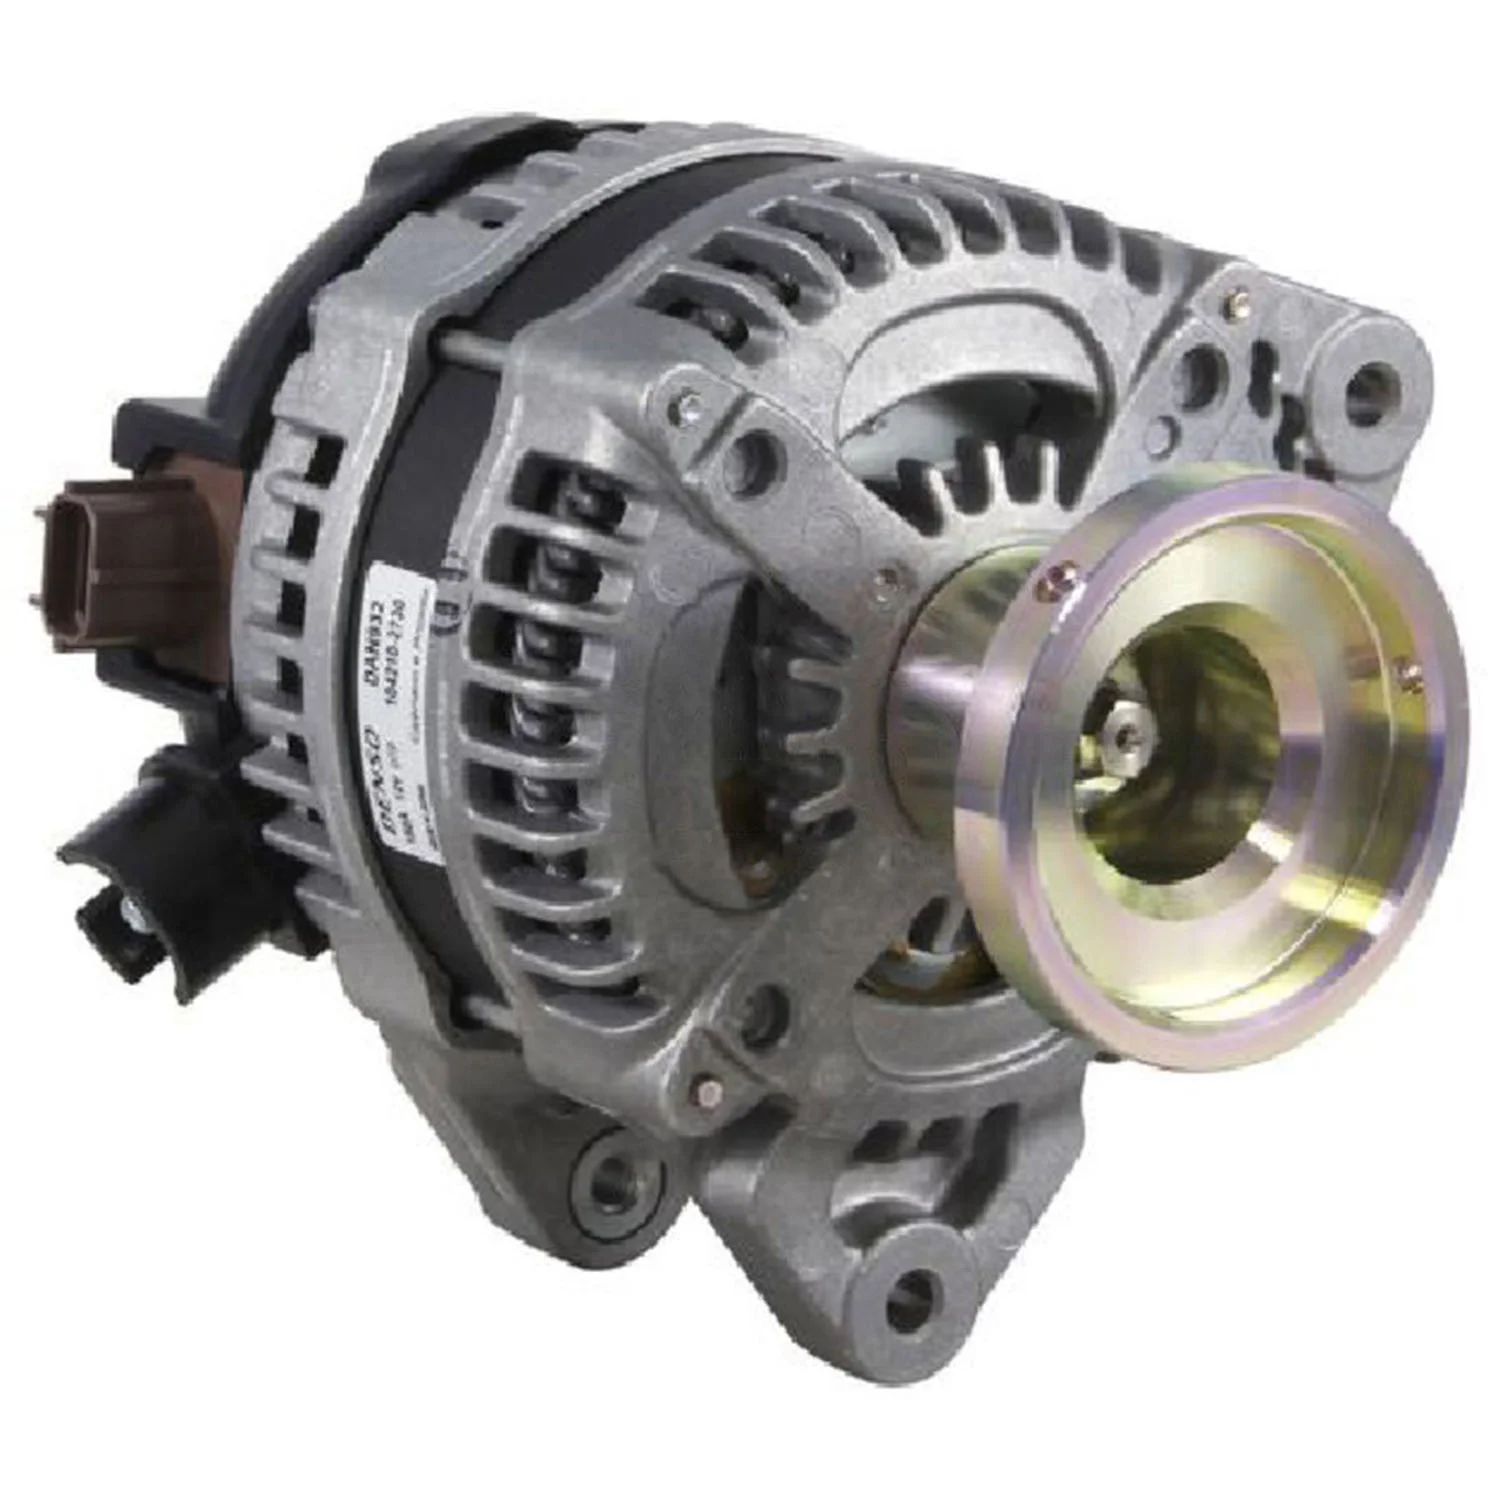 

Auto Dynamo Alternator Generator For BSH Delco DENS FIATA Ford Lucas VLEO 0986081140 114248 CAL40229 CAL40229AS CAL40229ES